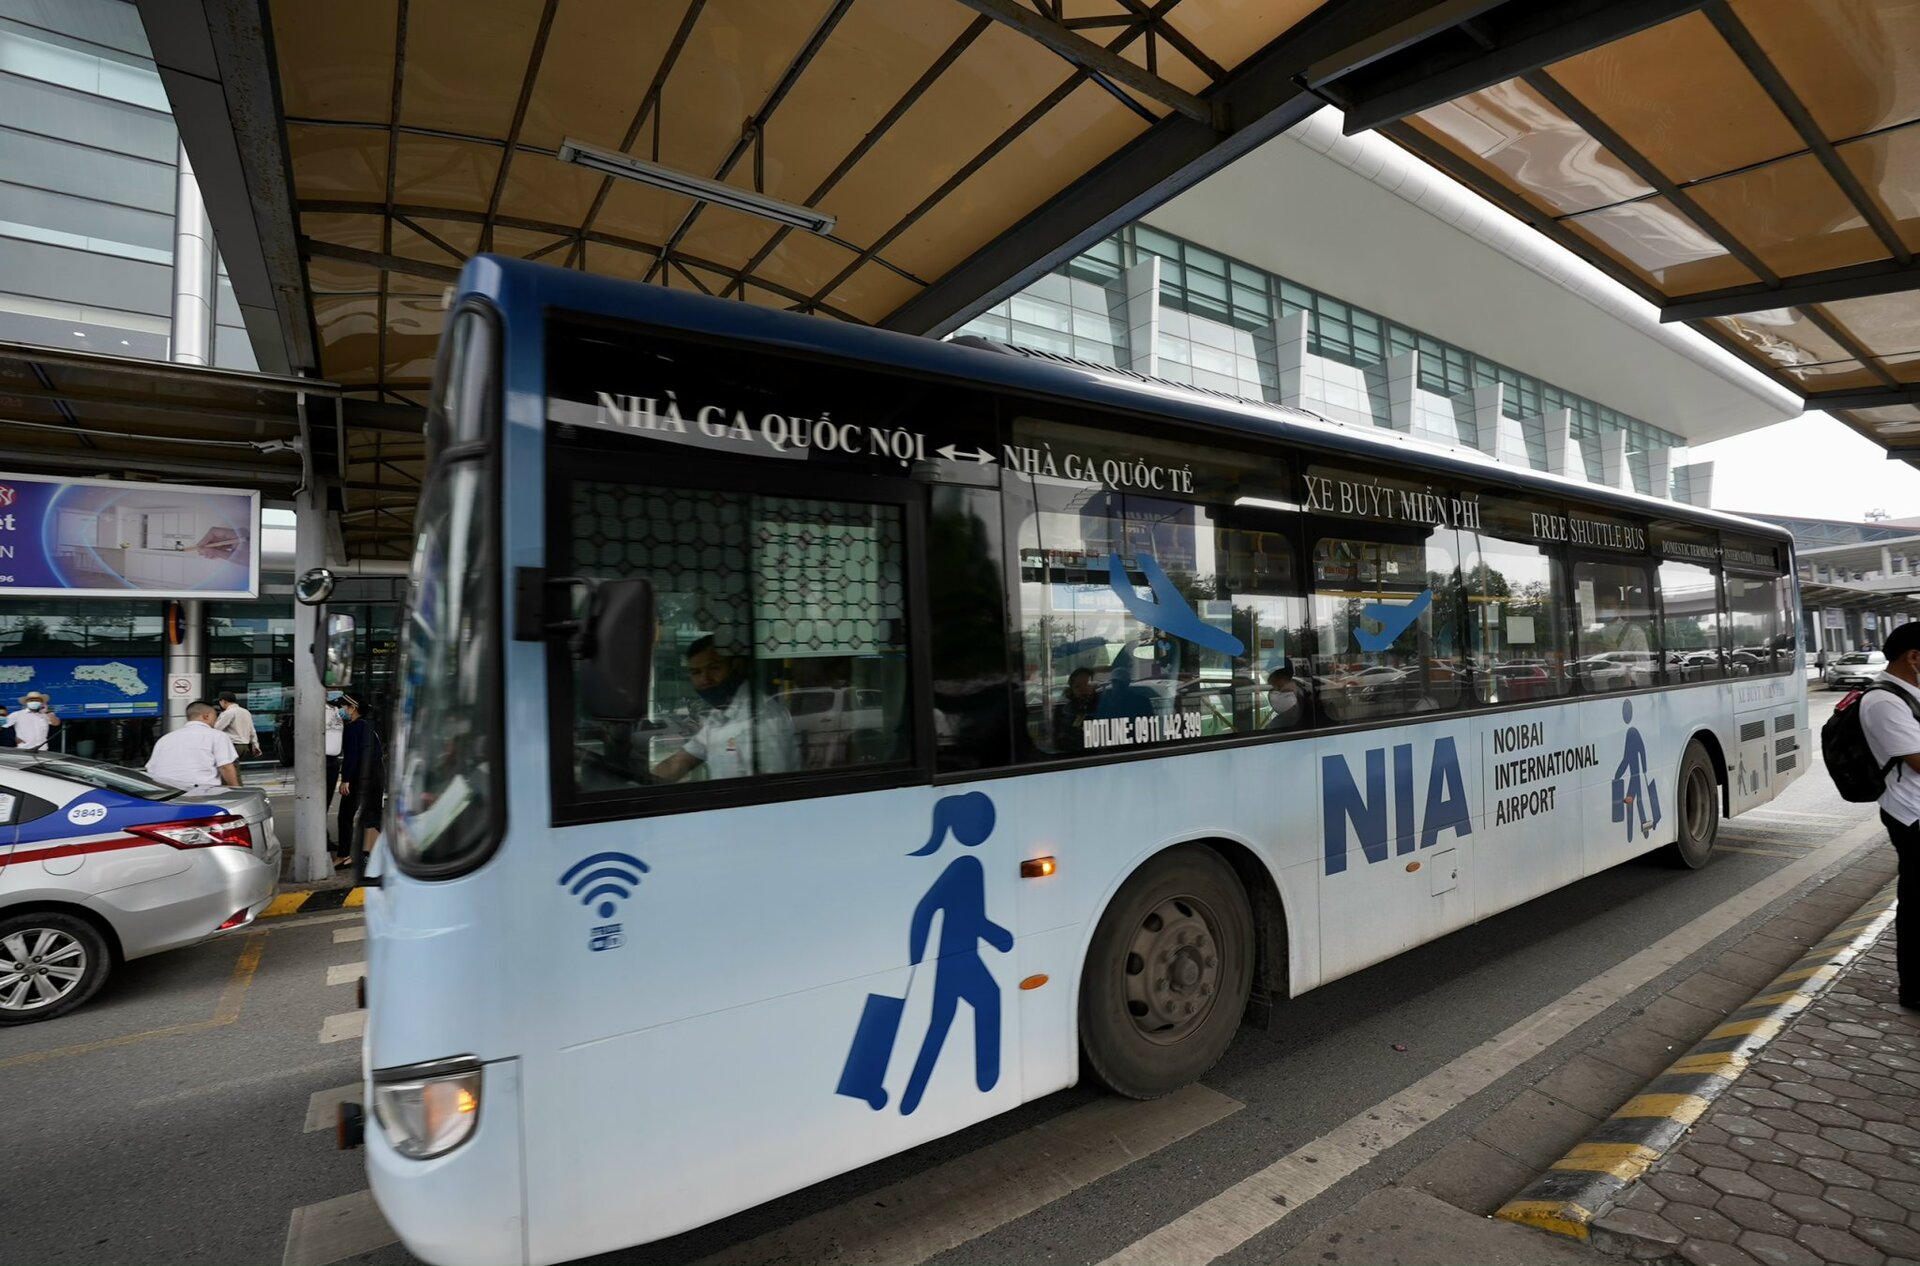 Dịch vụ xe buýt nối chuyến miễn phí tại sân bay Nội Bài